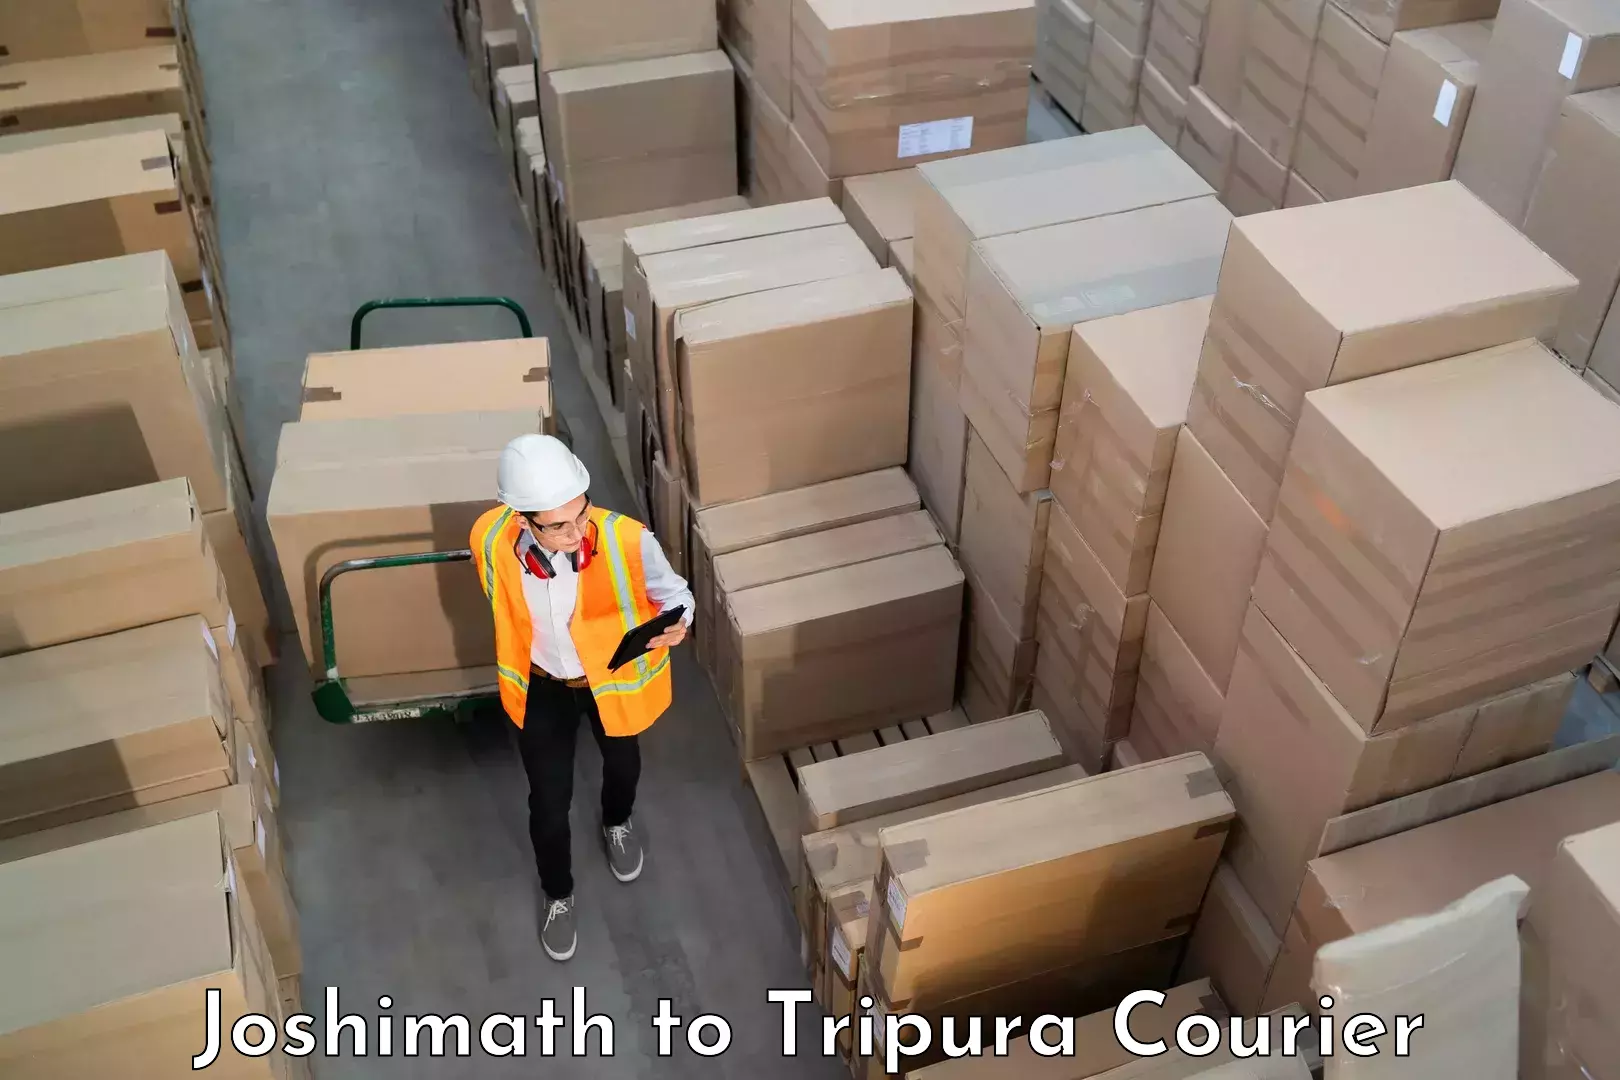 Luggage shipment tracking Joshimath to Kailashahar